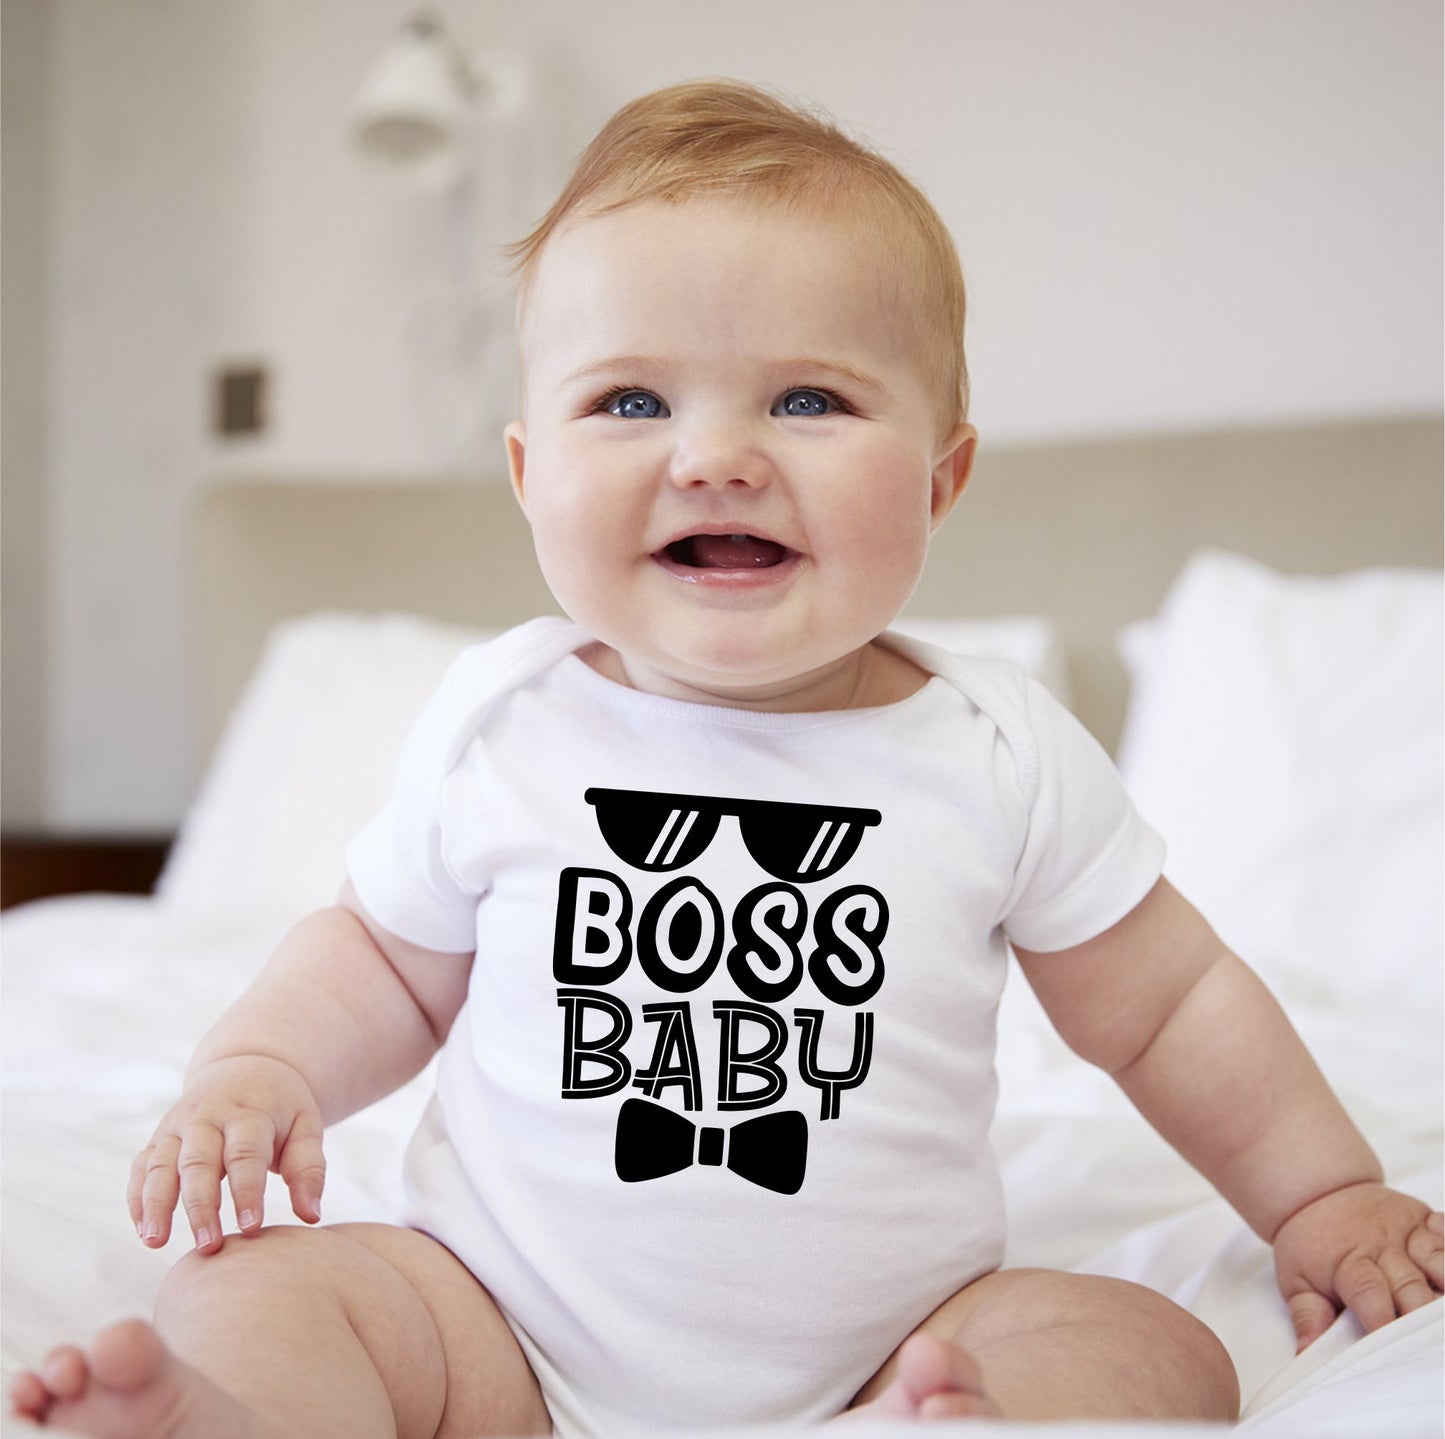 Baby Statement Onesies - Boss Baby